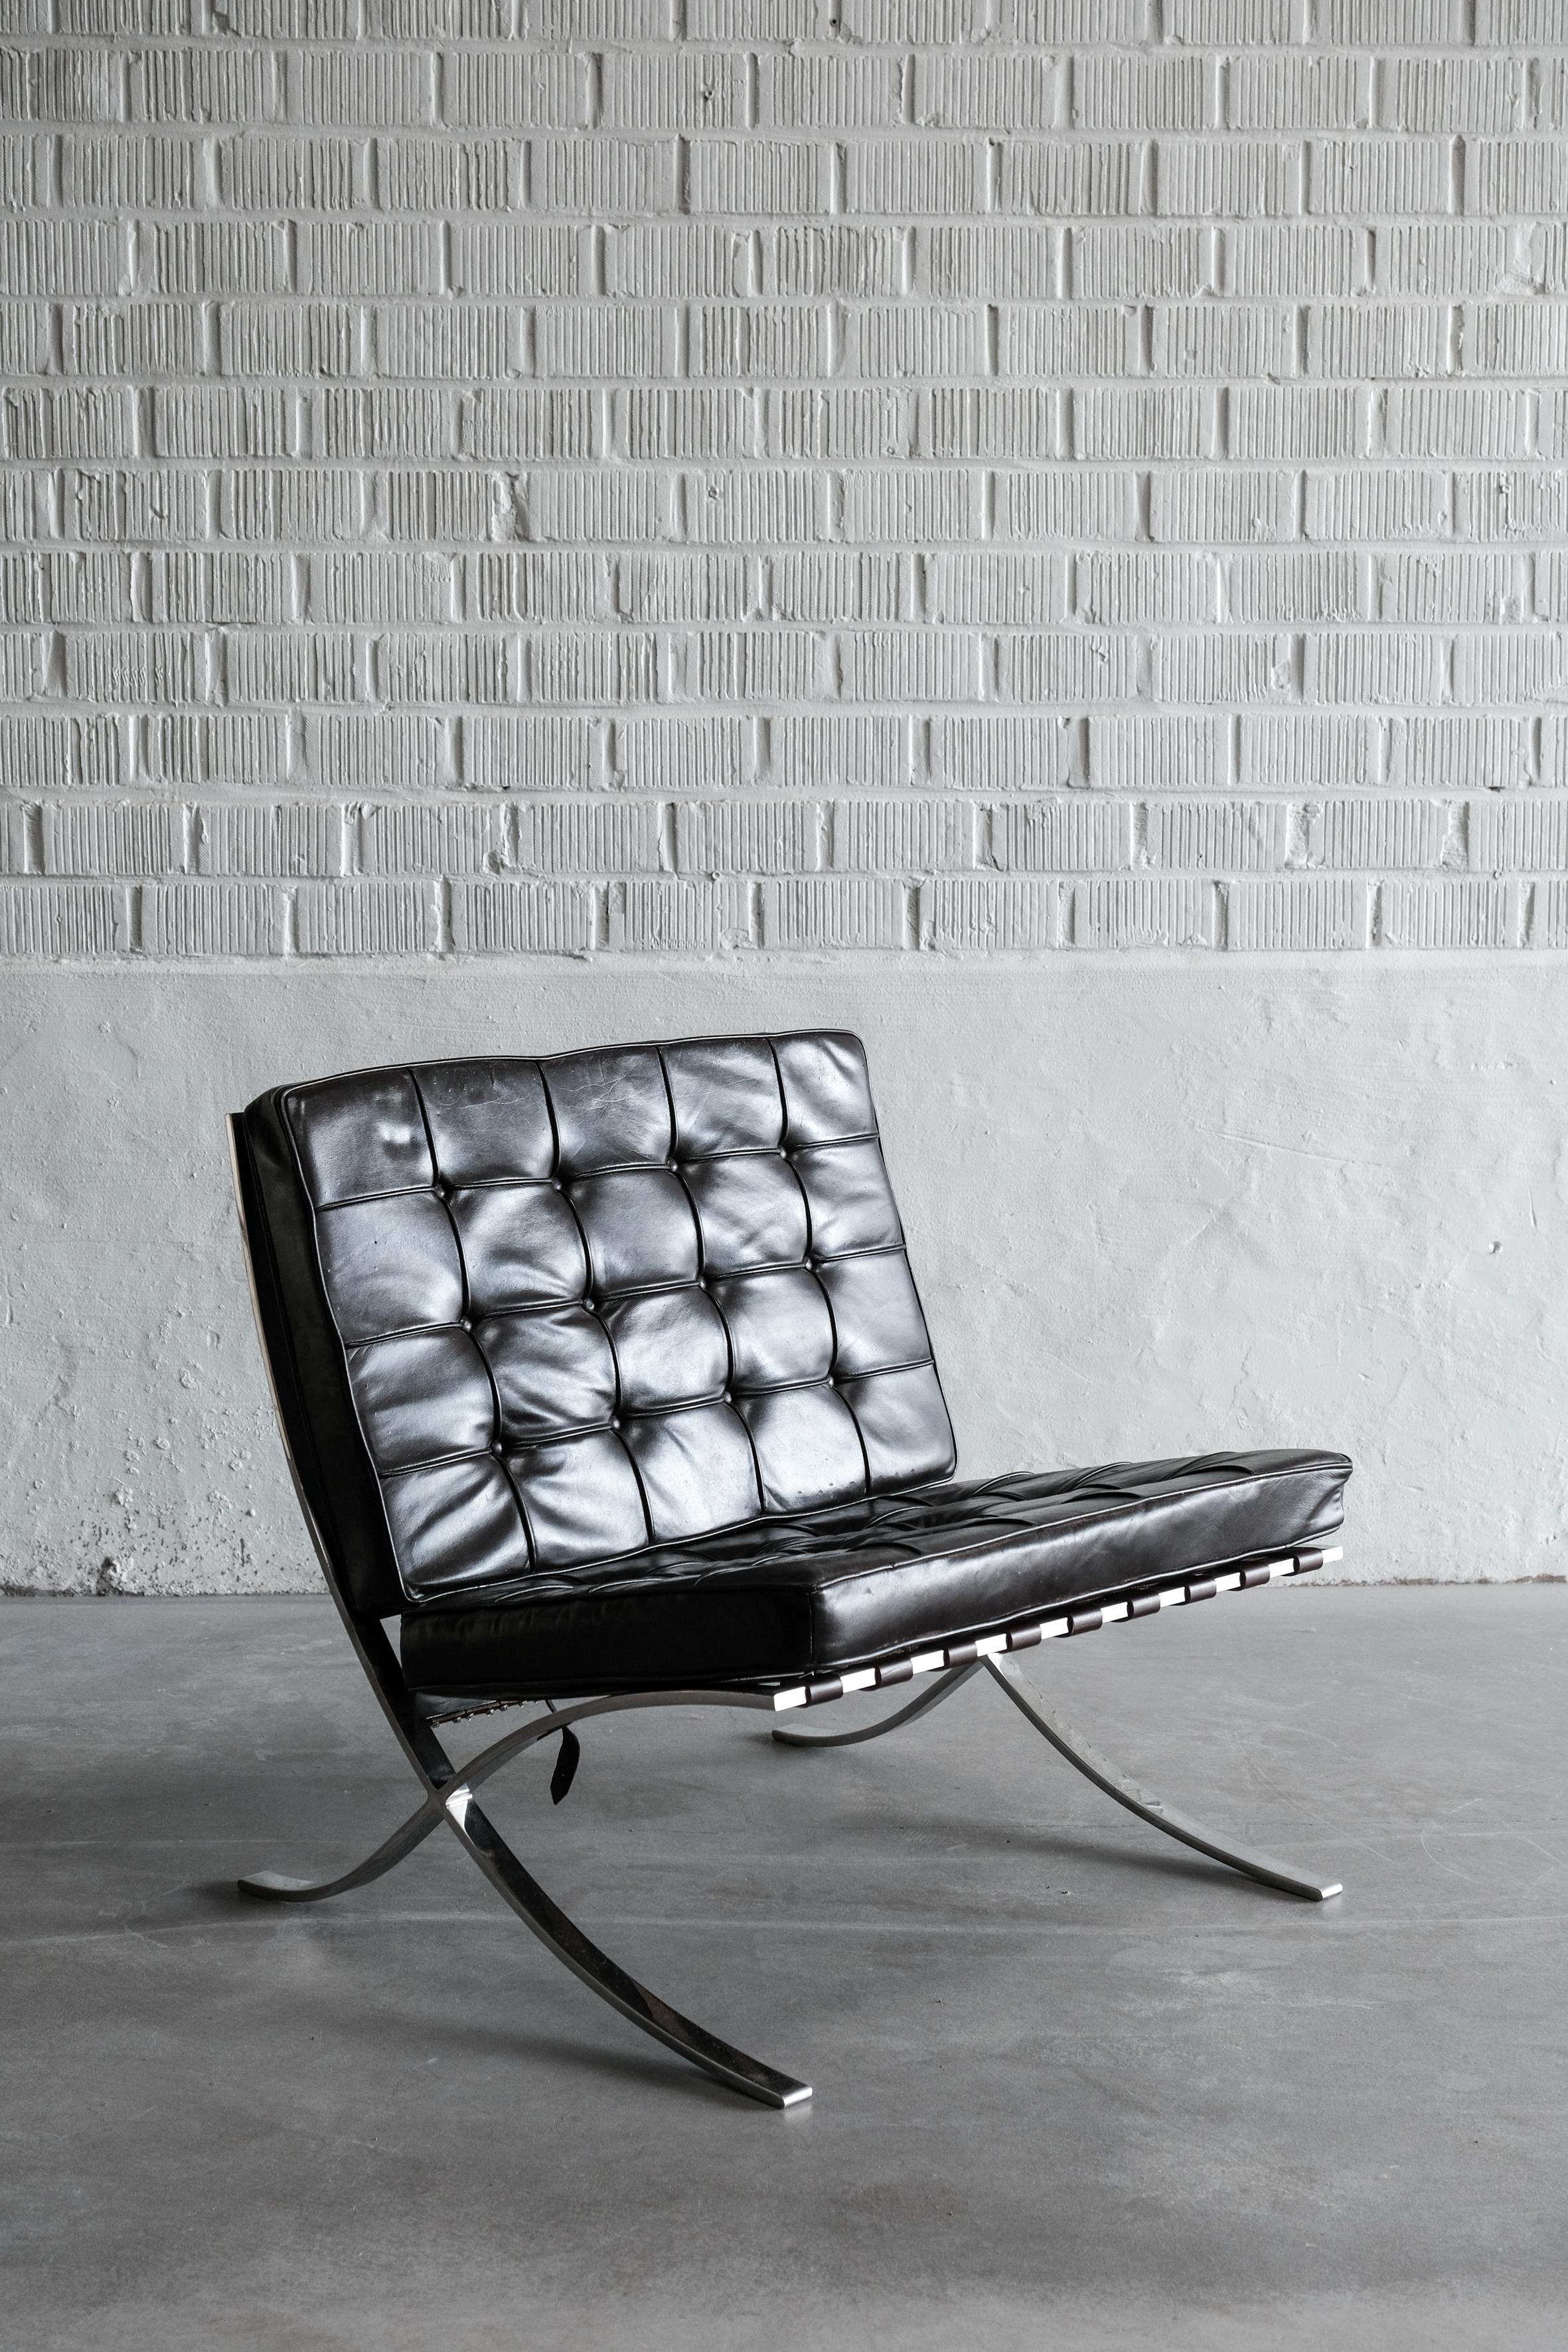  Ikonisches Vintage-Paar von Barcelona Lounge Chairs von Mies van der Rohe! 

Zeitloses Paar Barcelona-Sessel, ein Designklassiker des legendären Mies van der Rohe! Diese Stühle sind nicht einfach nur Möbel, sie sind ein Statement und verkörpern den